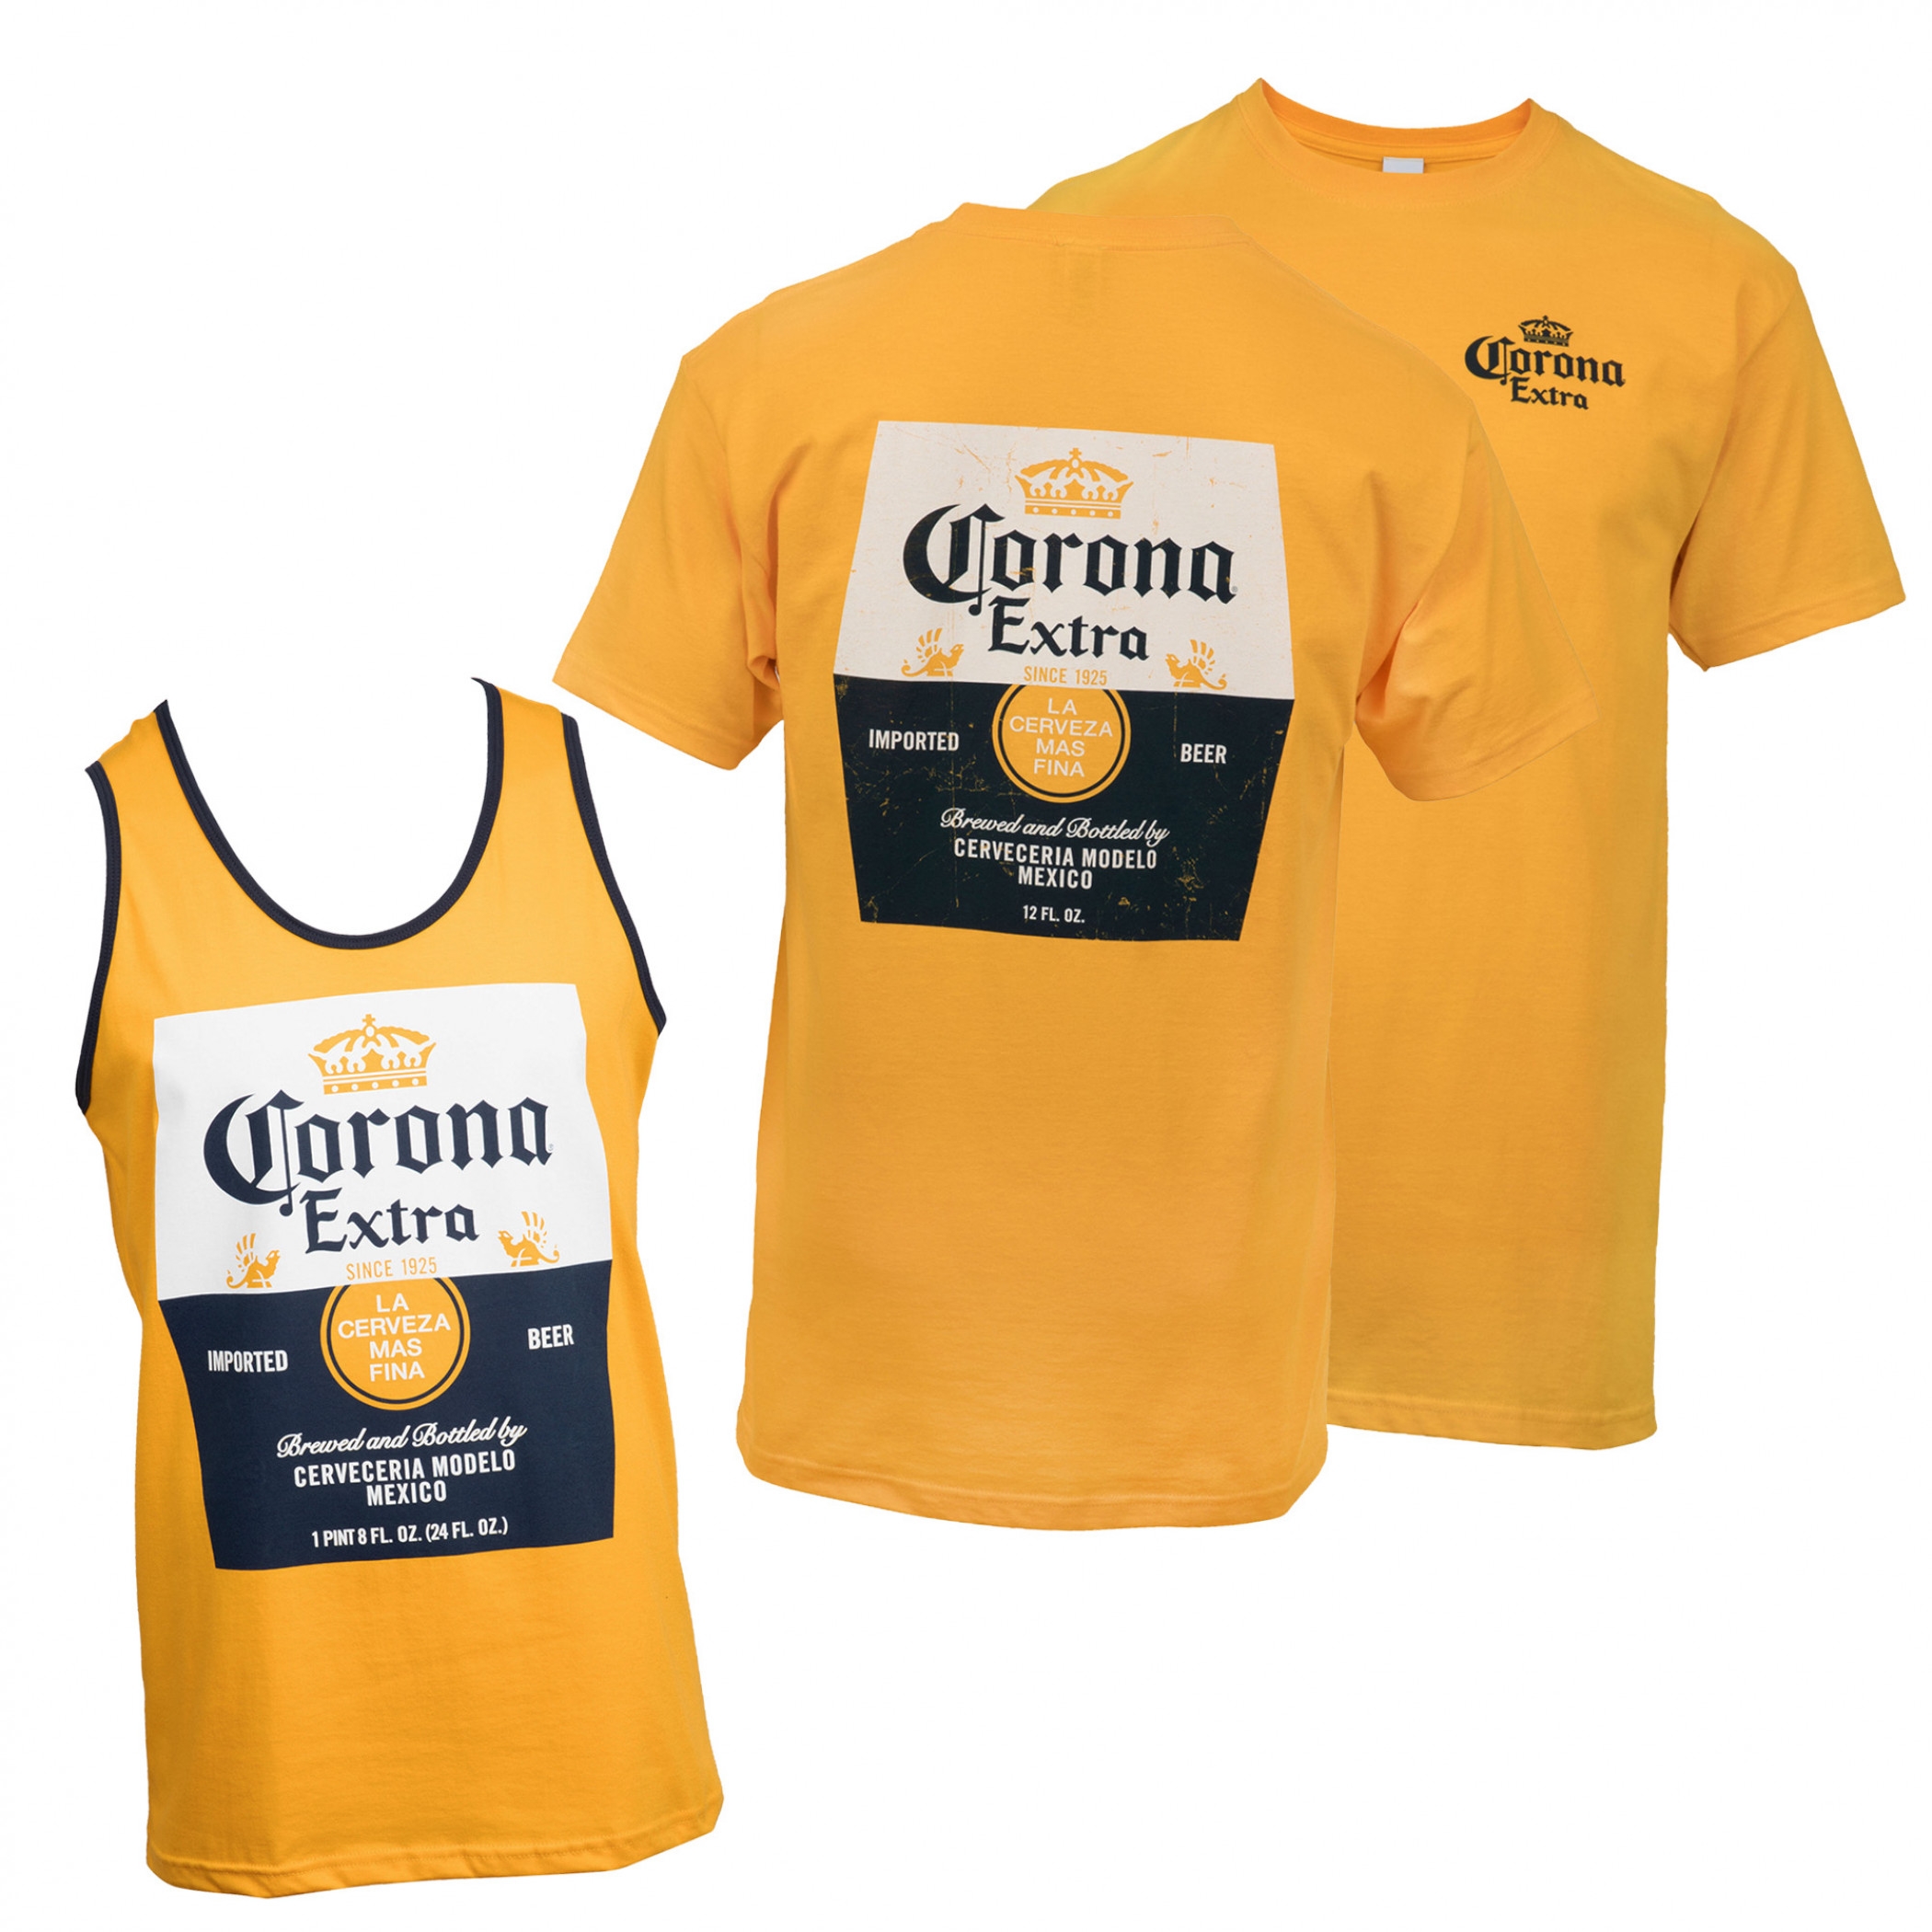 Corona Extra Tank Top and T-Shirt Set